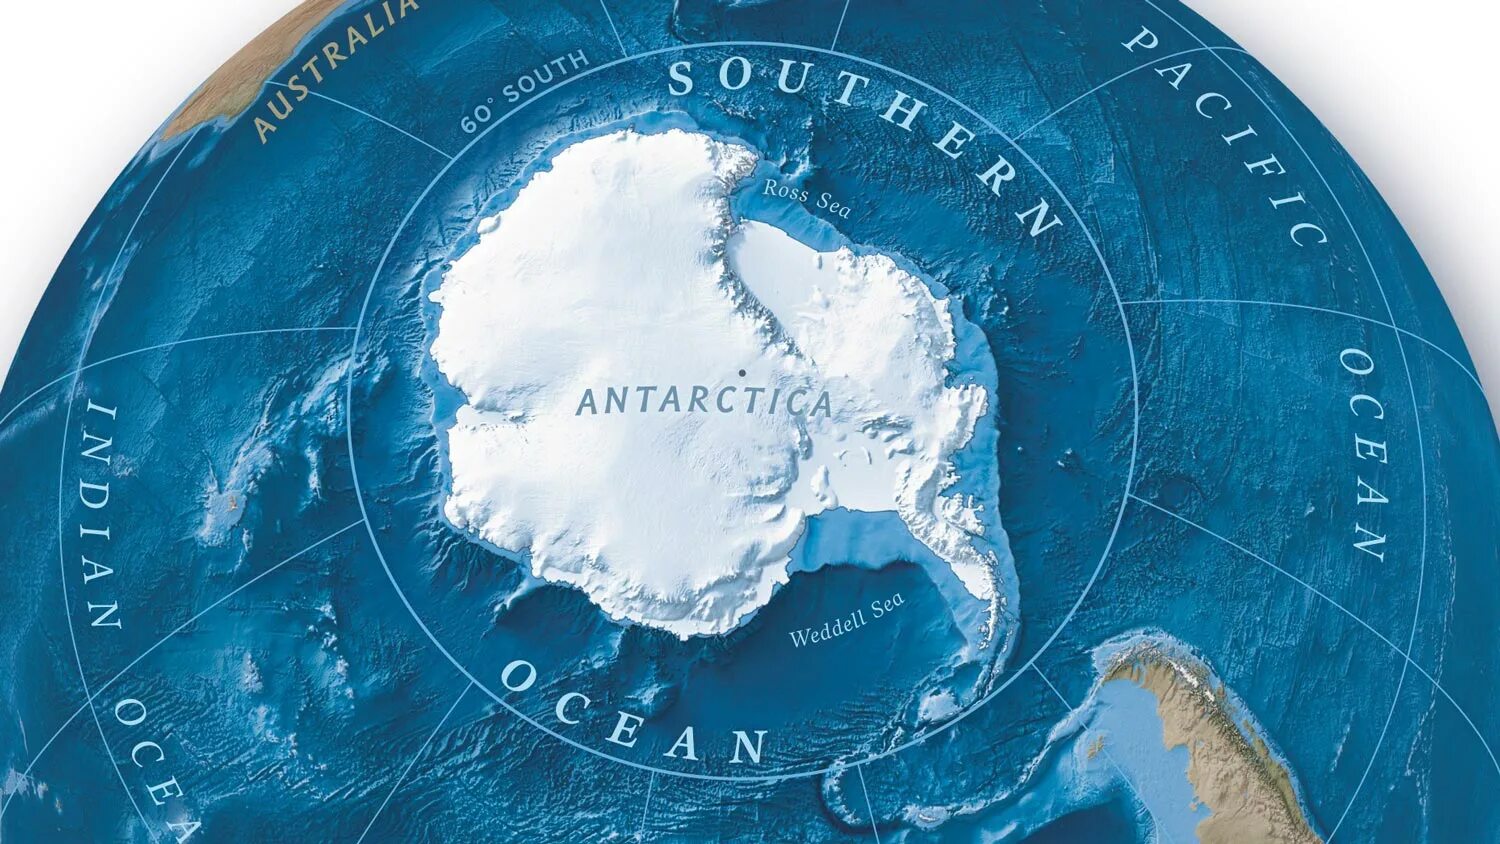 География южного океана. Южный океан. Океаны на глобусе. Океаны на земном шаре. Южный океан на глобусе.